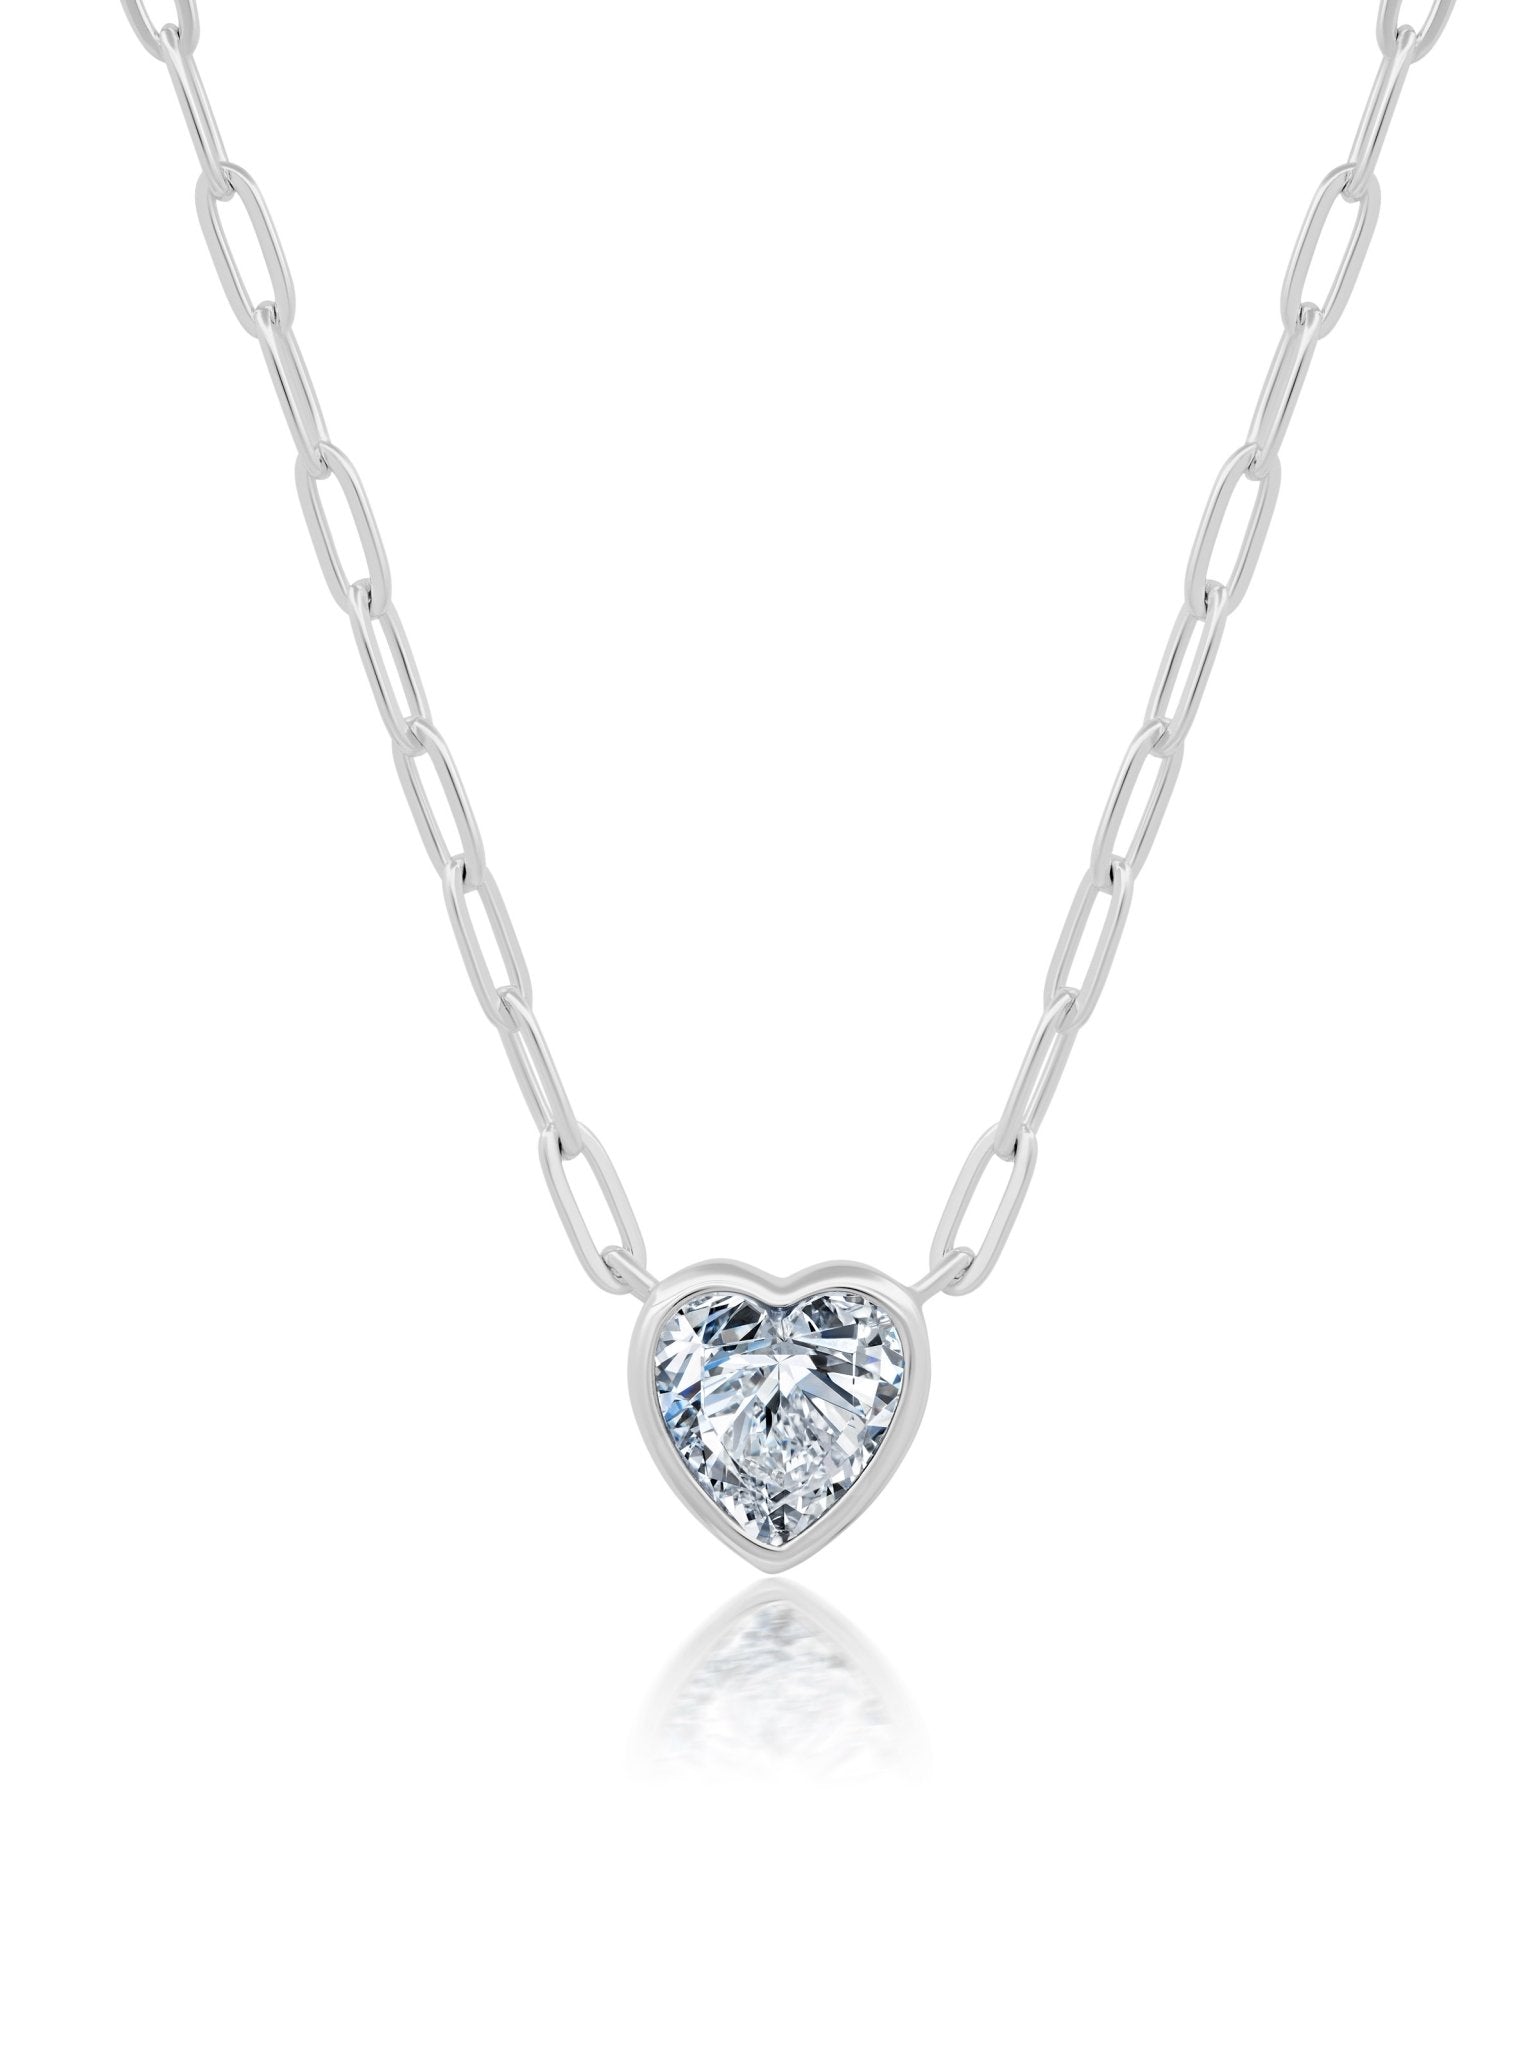 Crislu Jewelry Crislu Heart Shaped Bezel Set Paperclip Necklace Pure Platinum